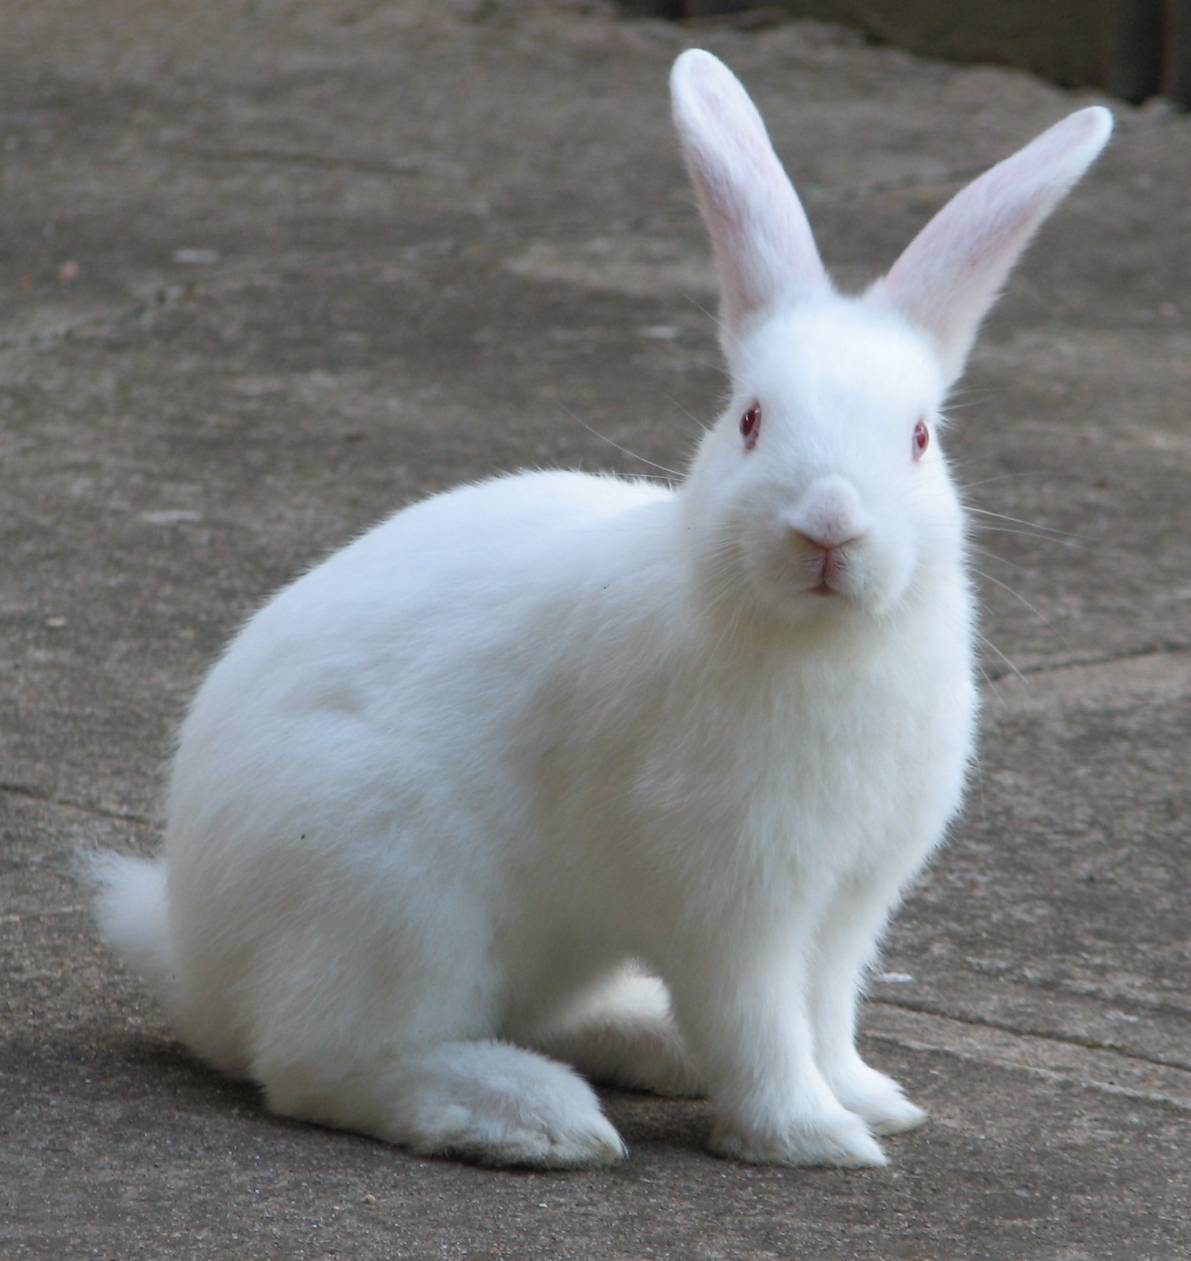 Rabbit - Facts, Description, Food Habits, Pet Care and Pictures